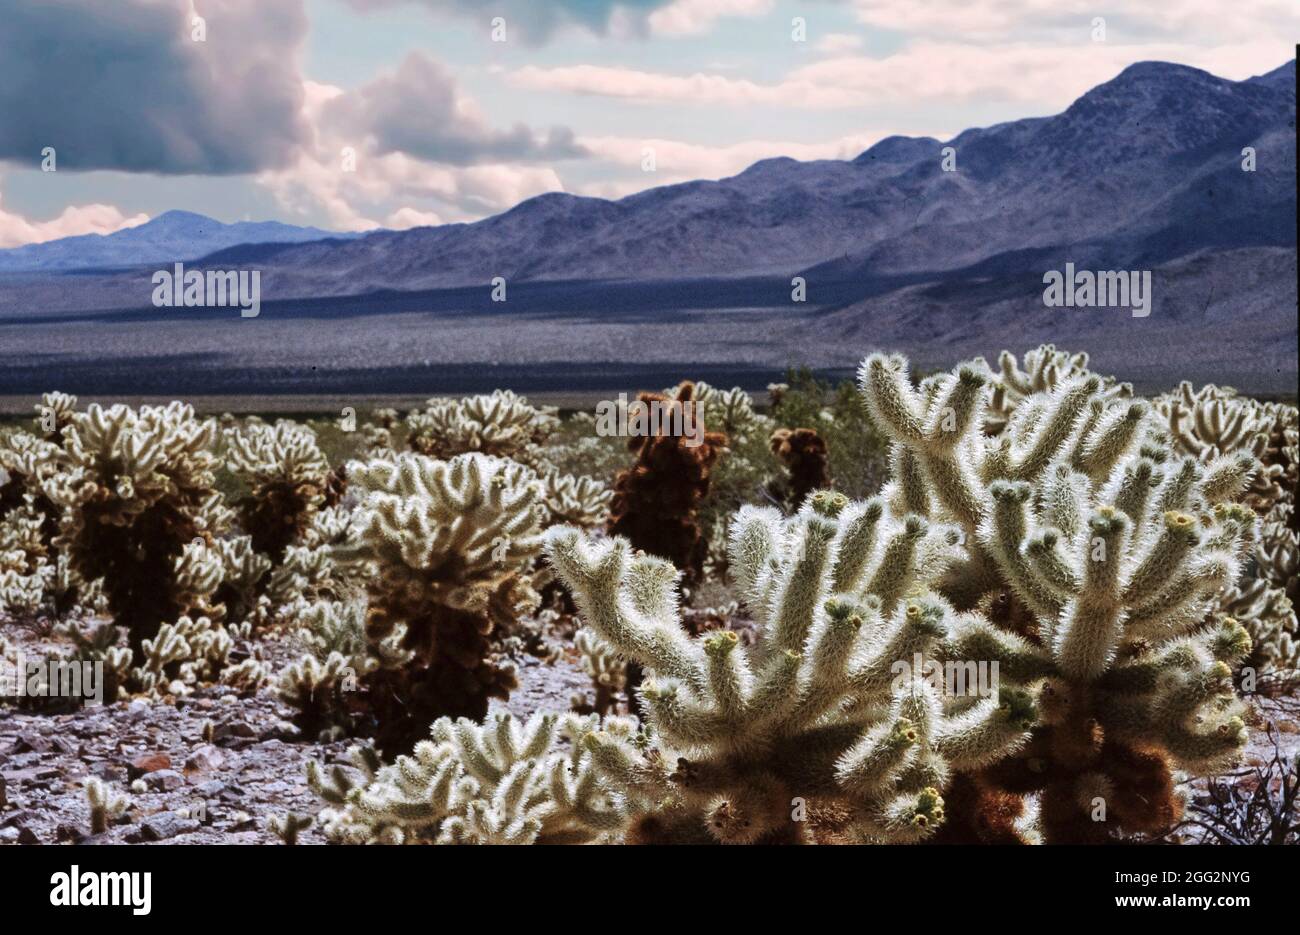 Imagen del jardín de cactus cholla en el Parque Nacional Joshua tree, California, Estados Unidos Foto de stock